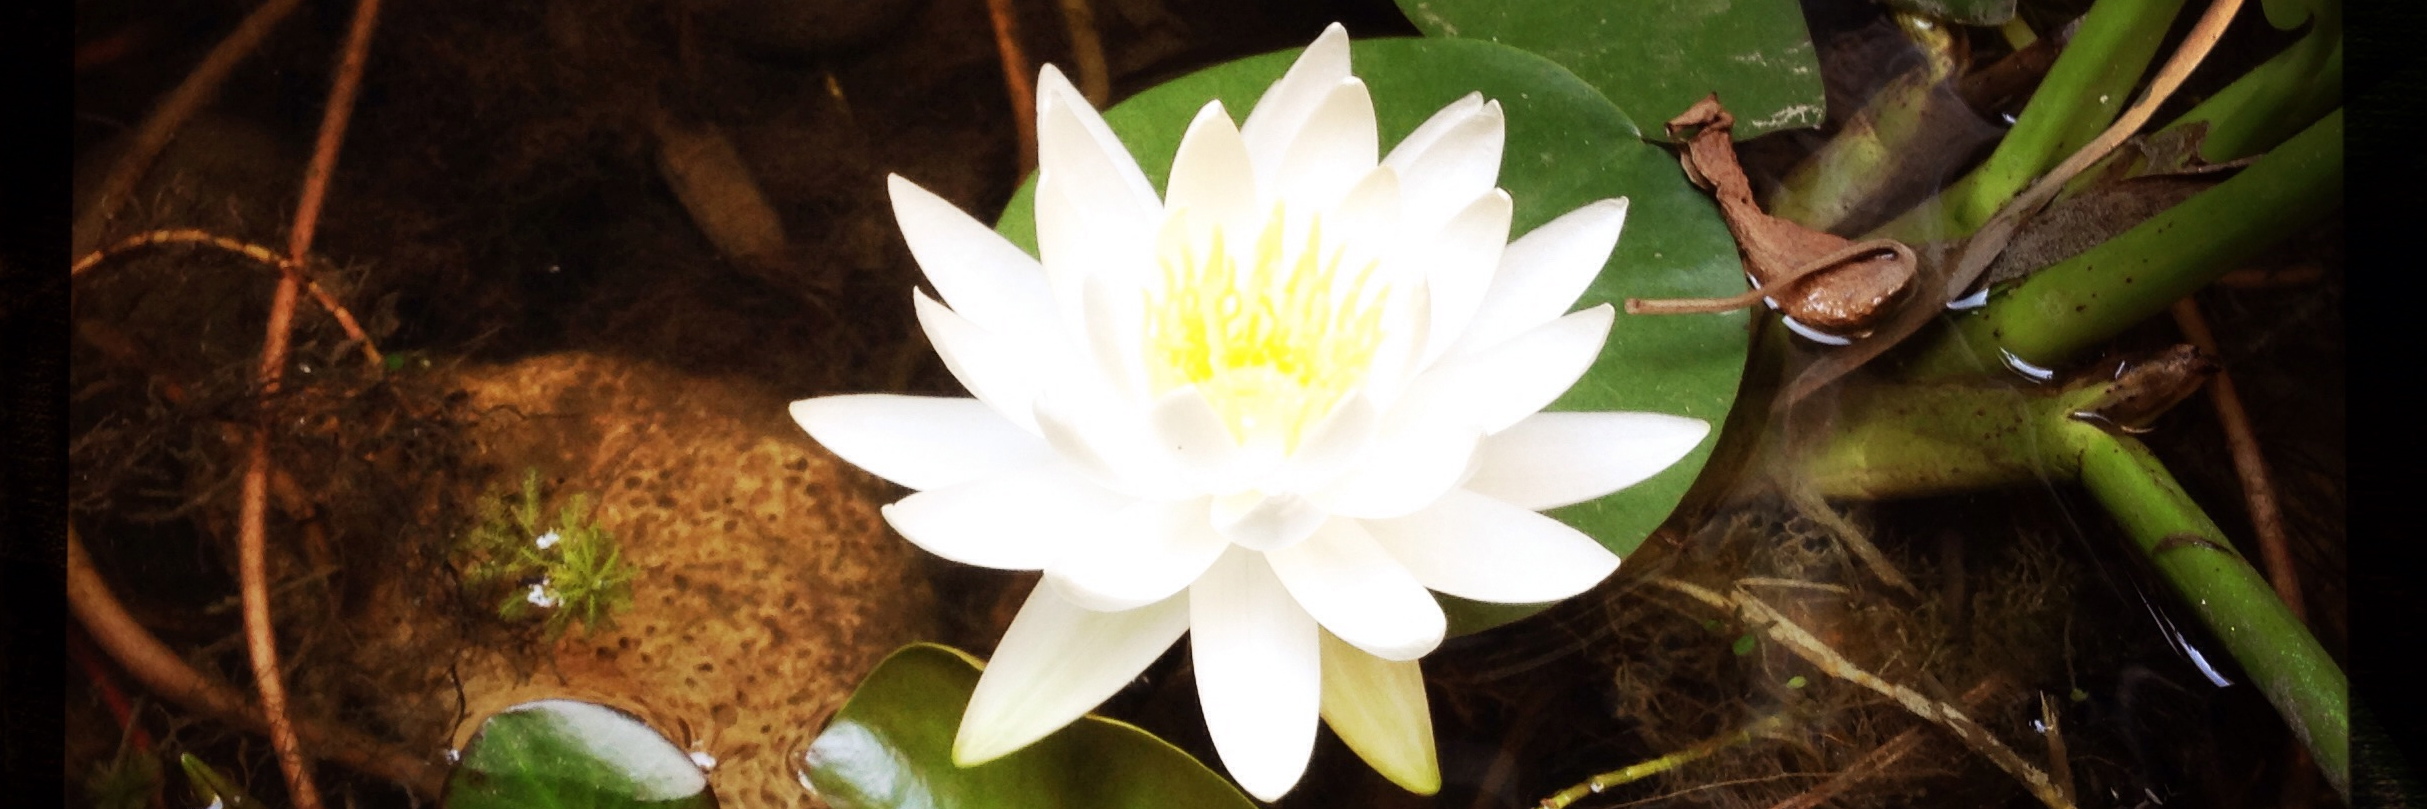 fleur de lotus blanche